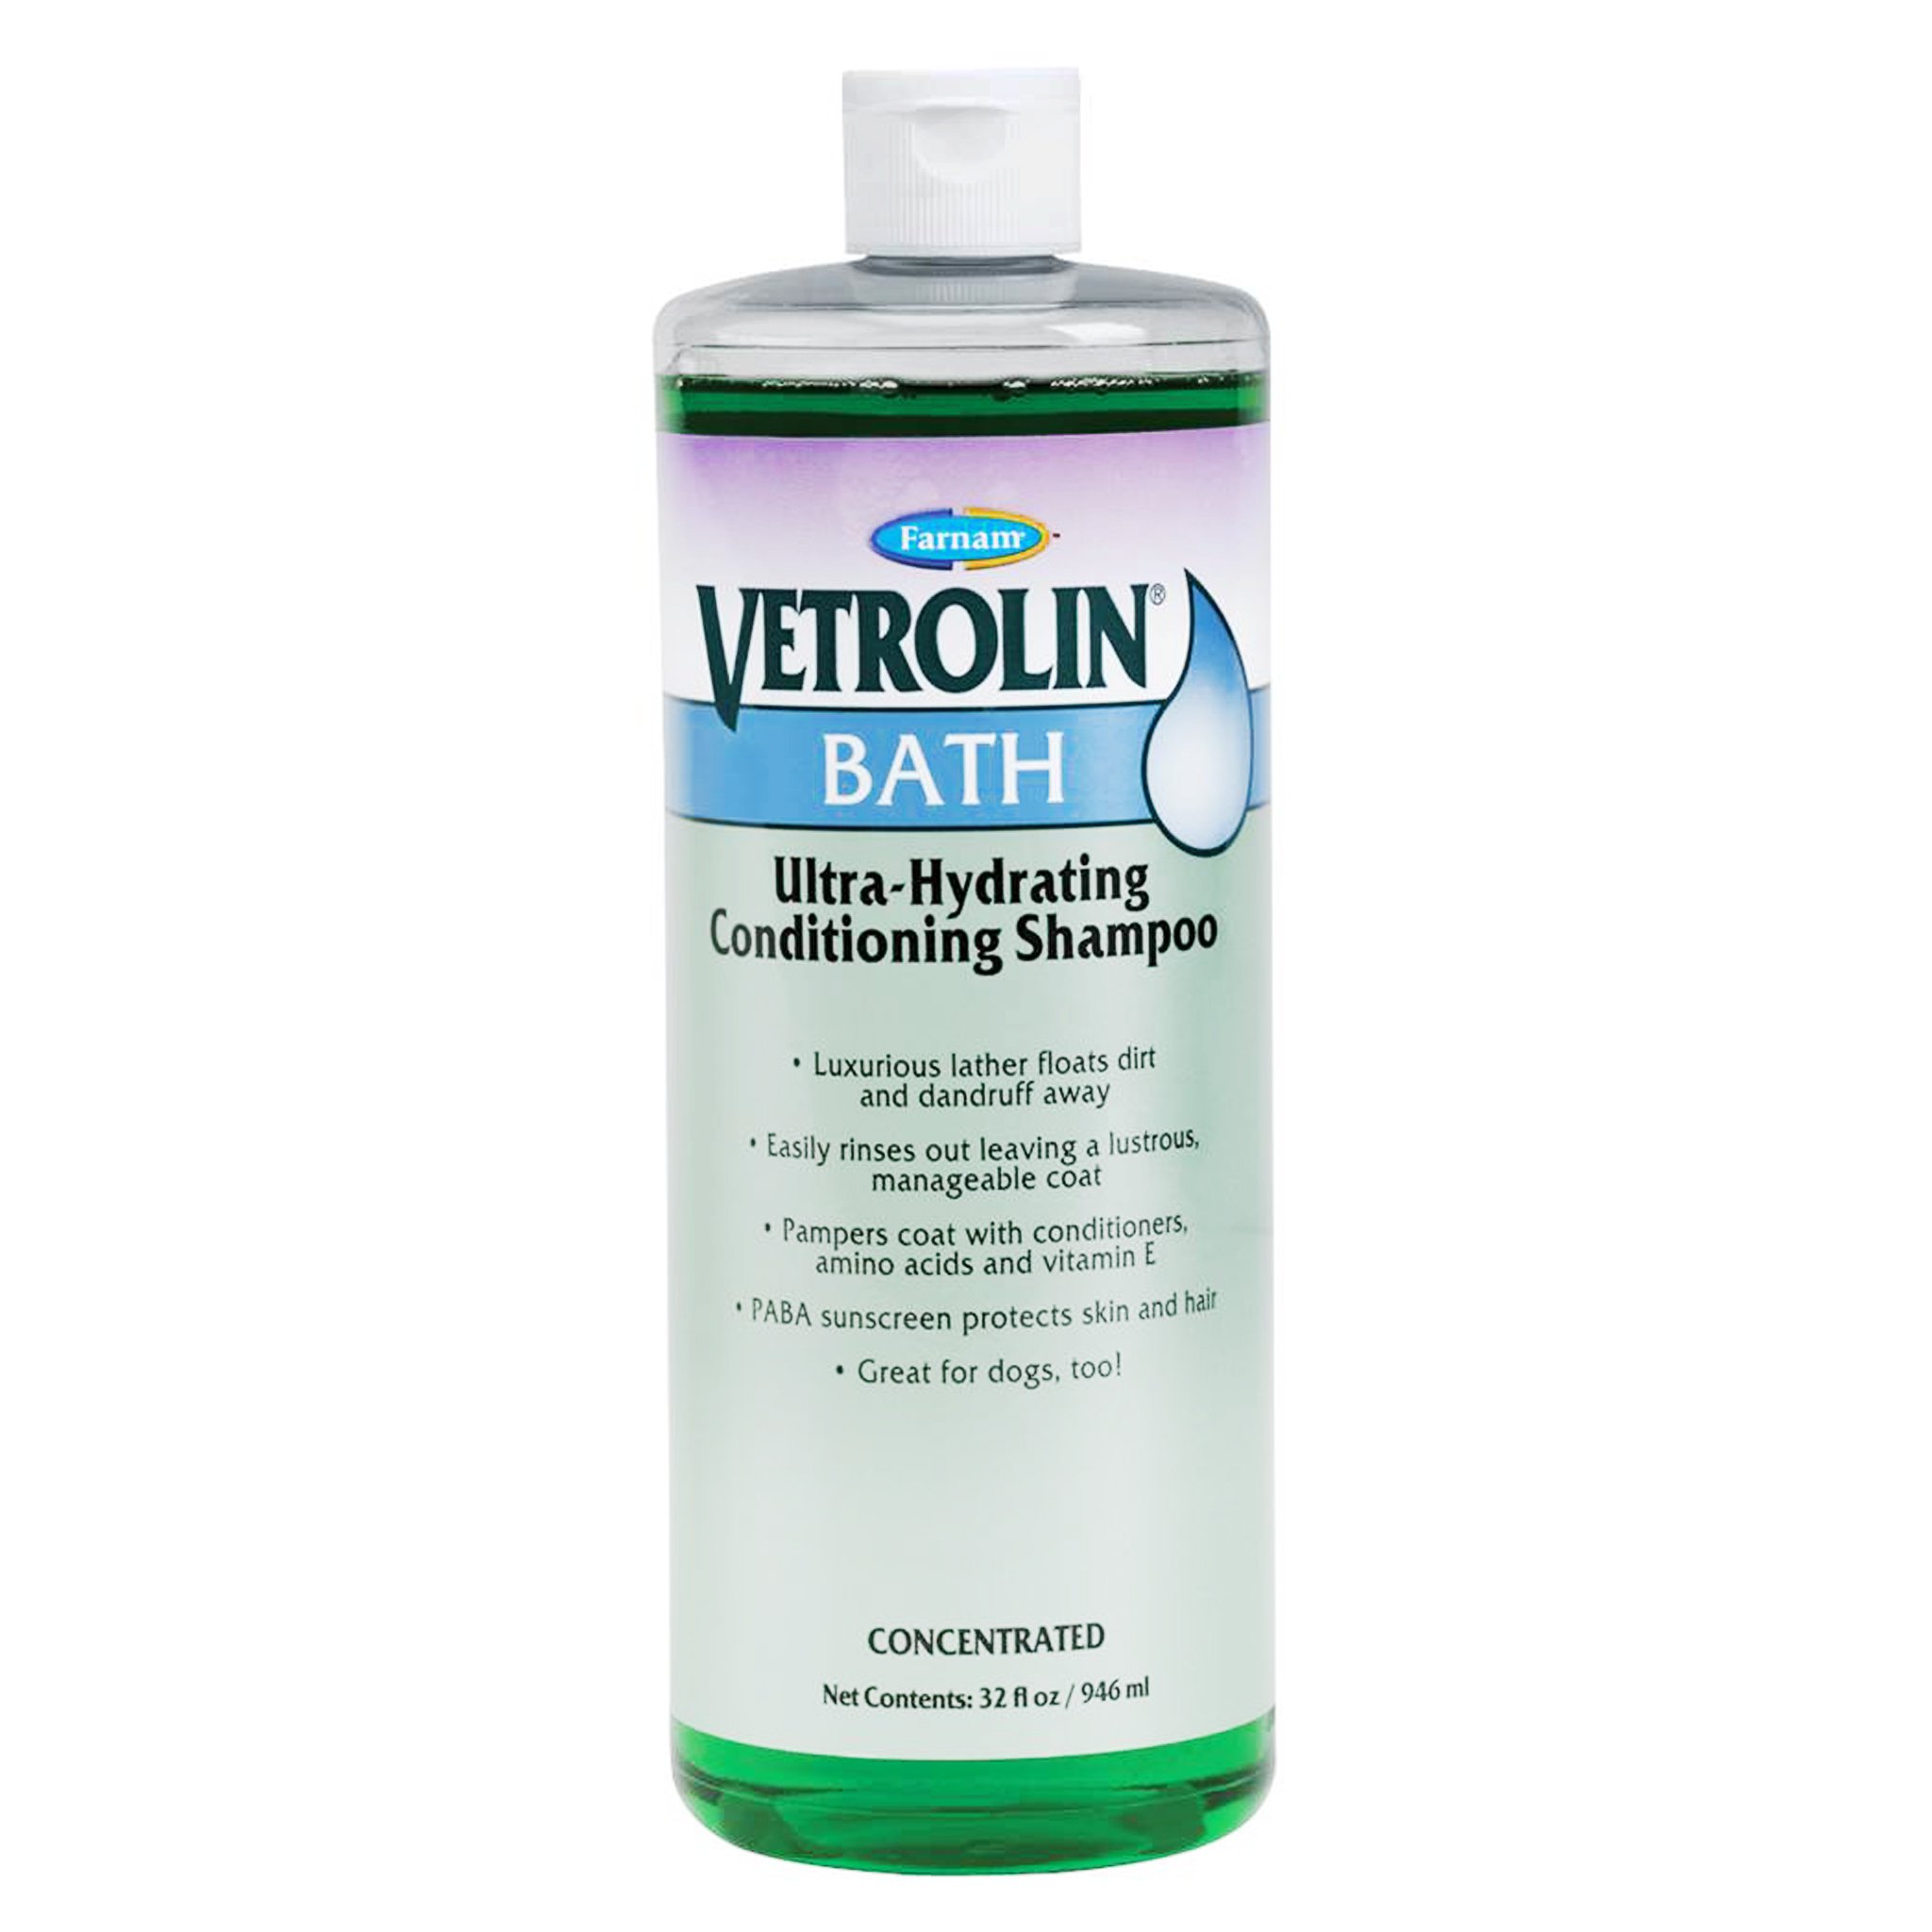 Farnam Vetrolin Ultra-Hydrating Conditioning Bath Shampoo